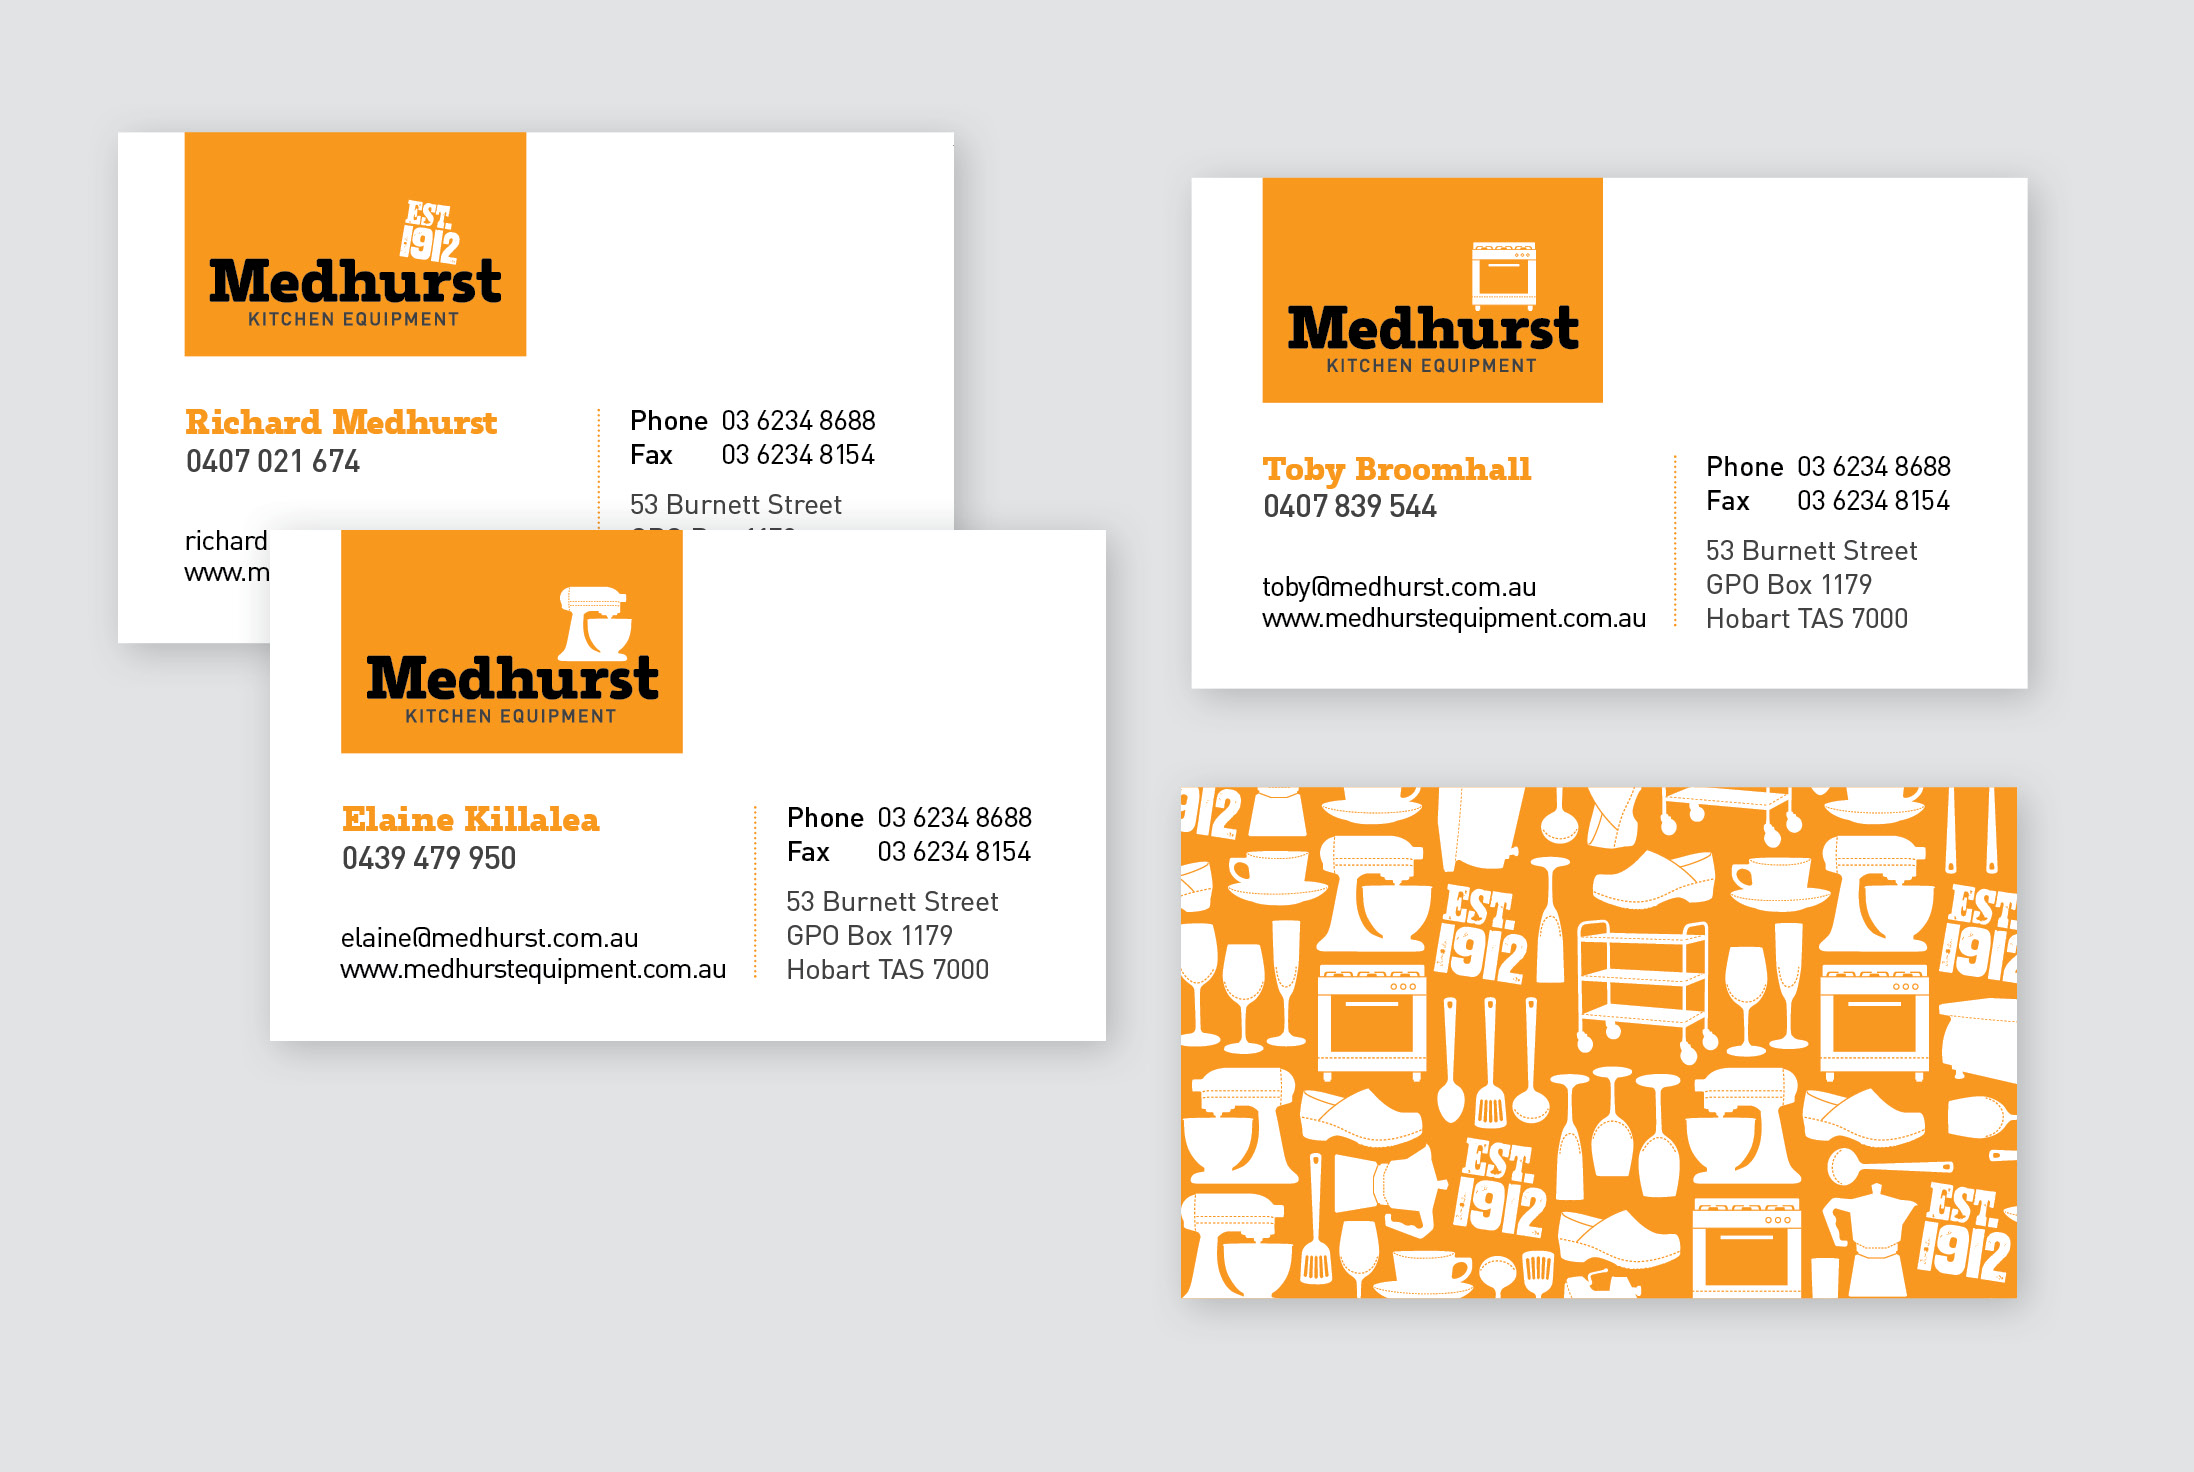 Medhurst Equipment - letterhead